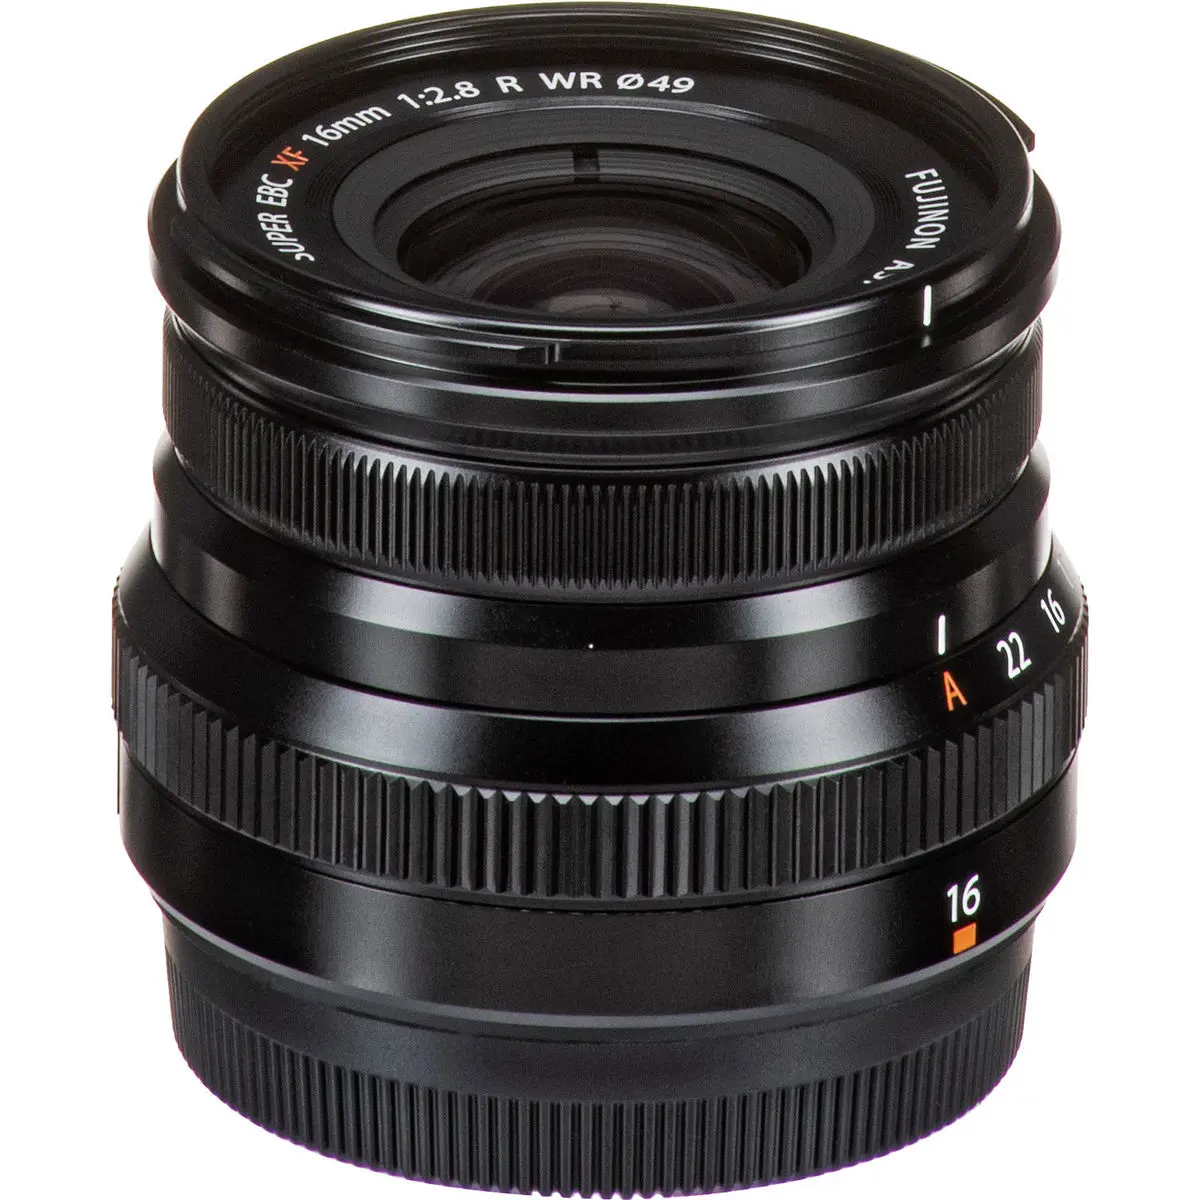 4. FUJINON XF 16mm F2.8 R WR Black Lens